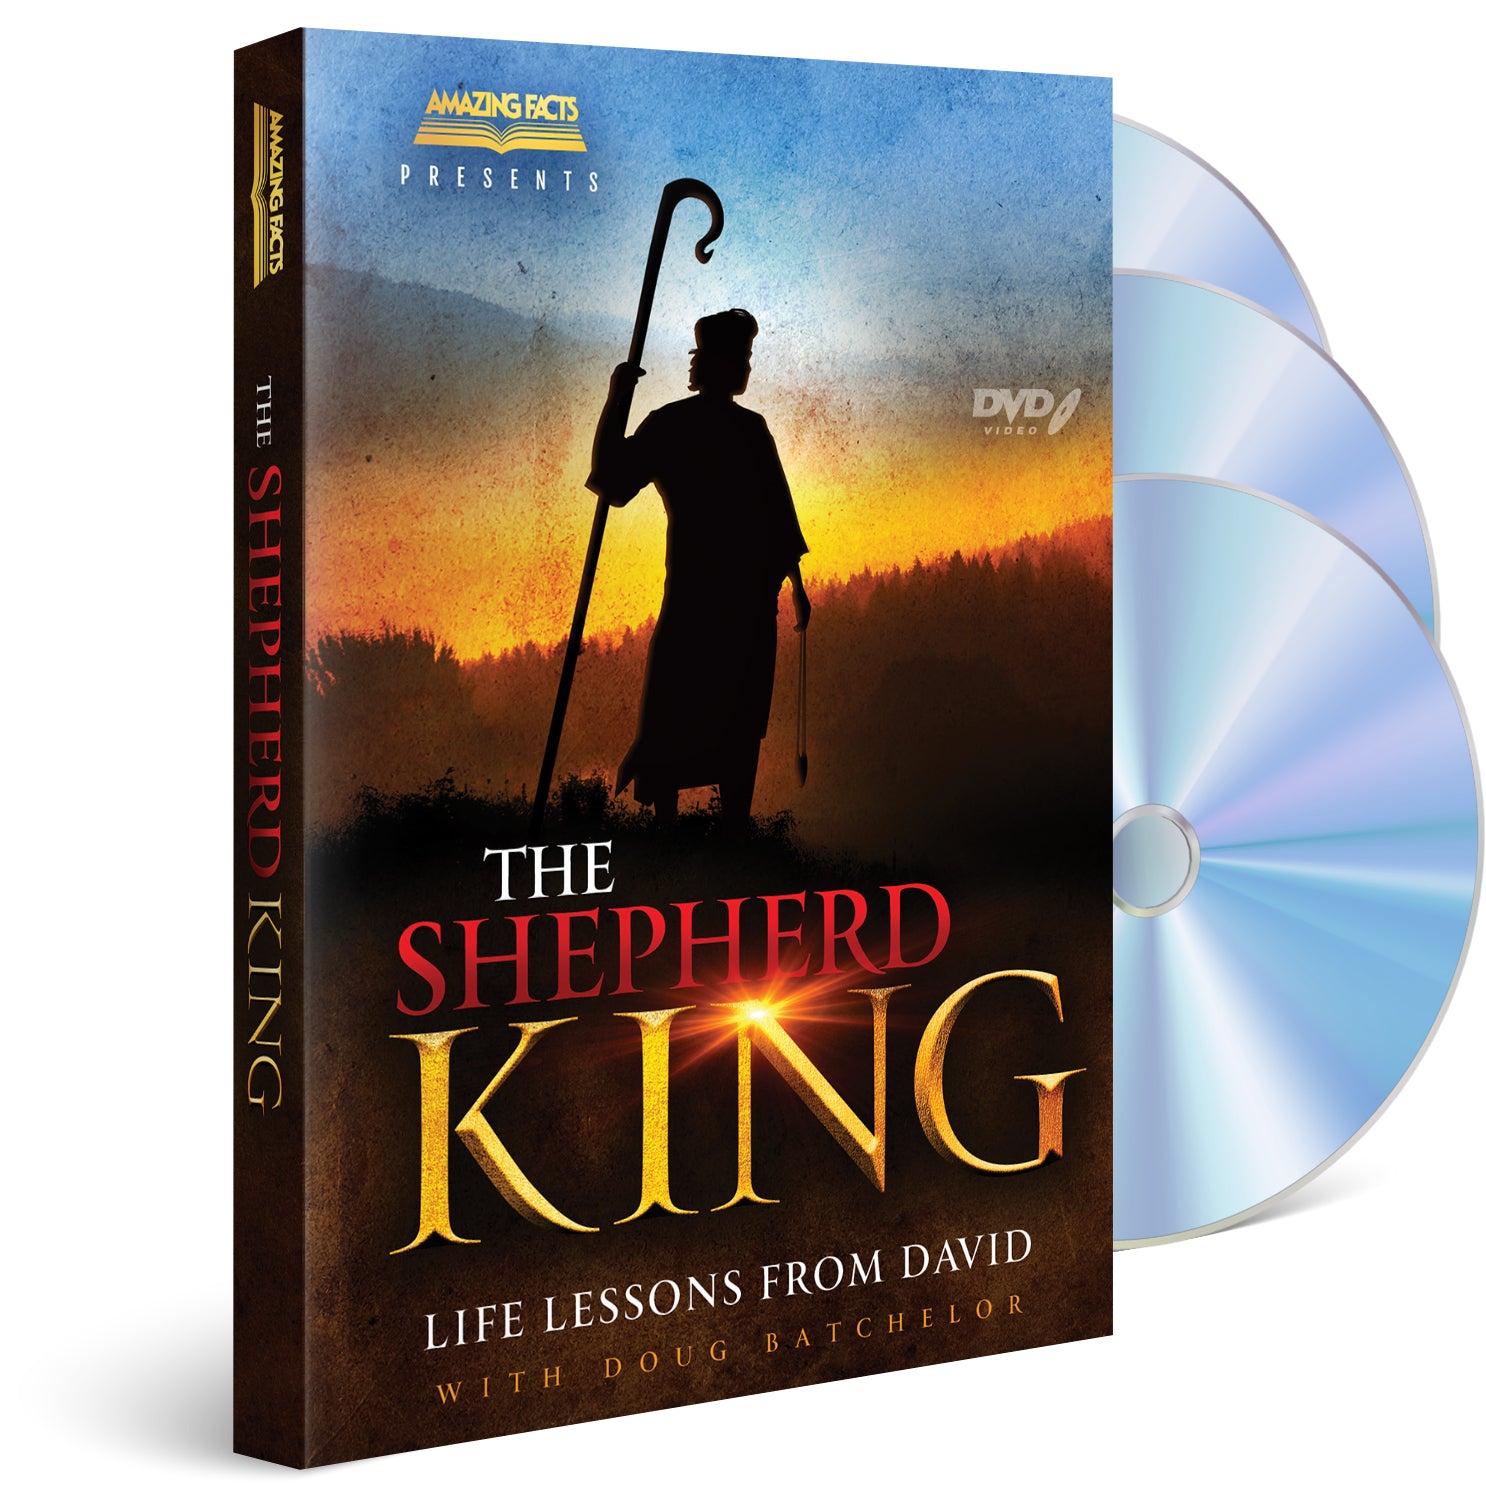 Shepherd King DVD by Doug Batchelor